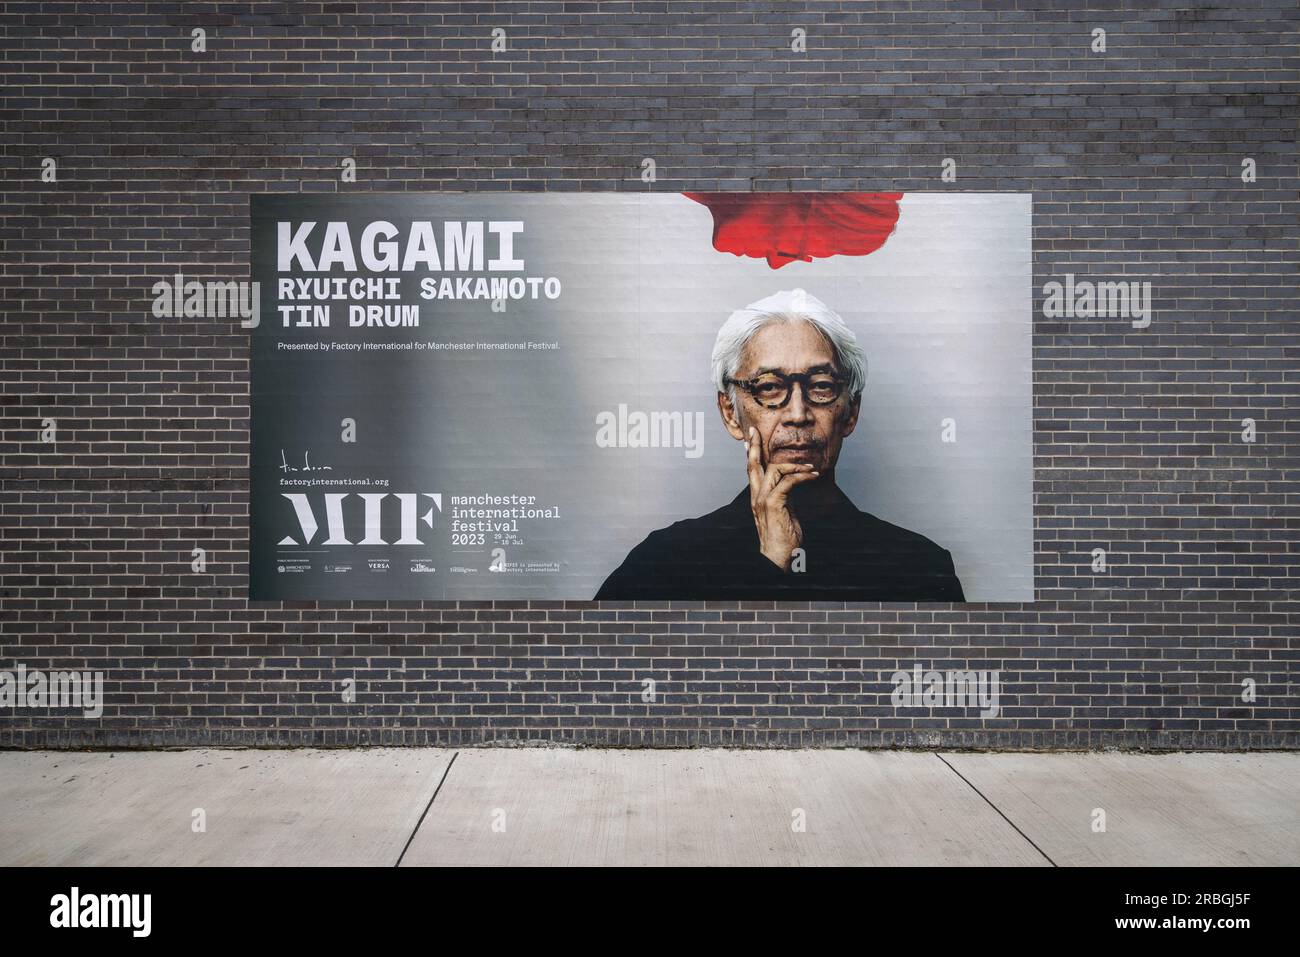 Un panneau d'affichage à versa Studios, Manchester annonçant Kagami, une expérience de concert virtuel impressionnante et révolutionnaire avec Ryuichi Sakamoto Banque D'Images